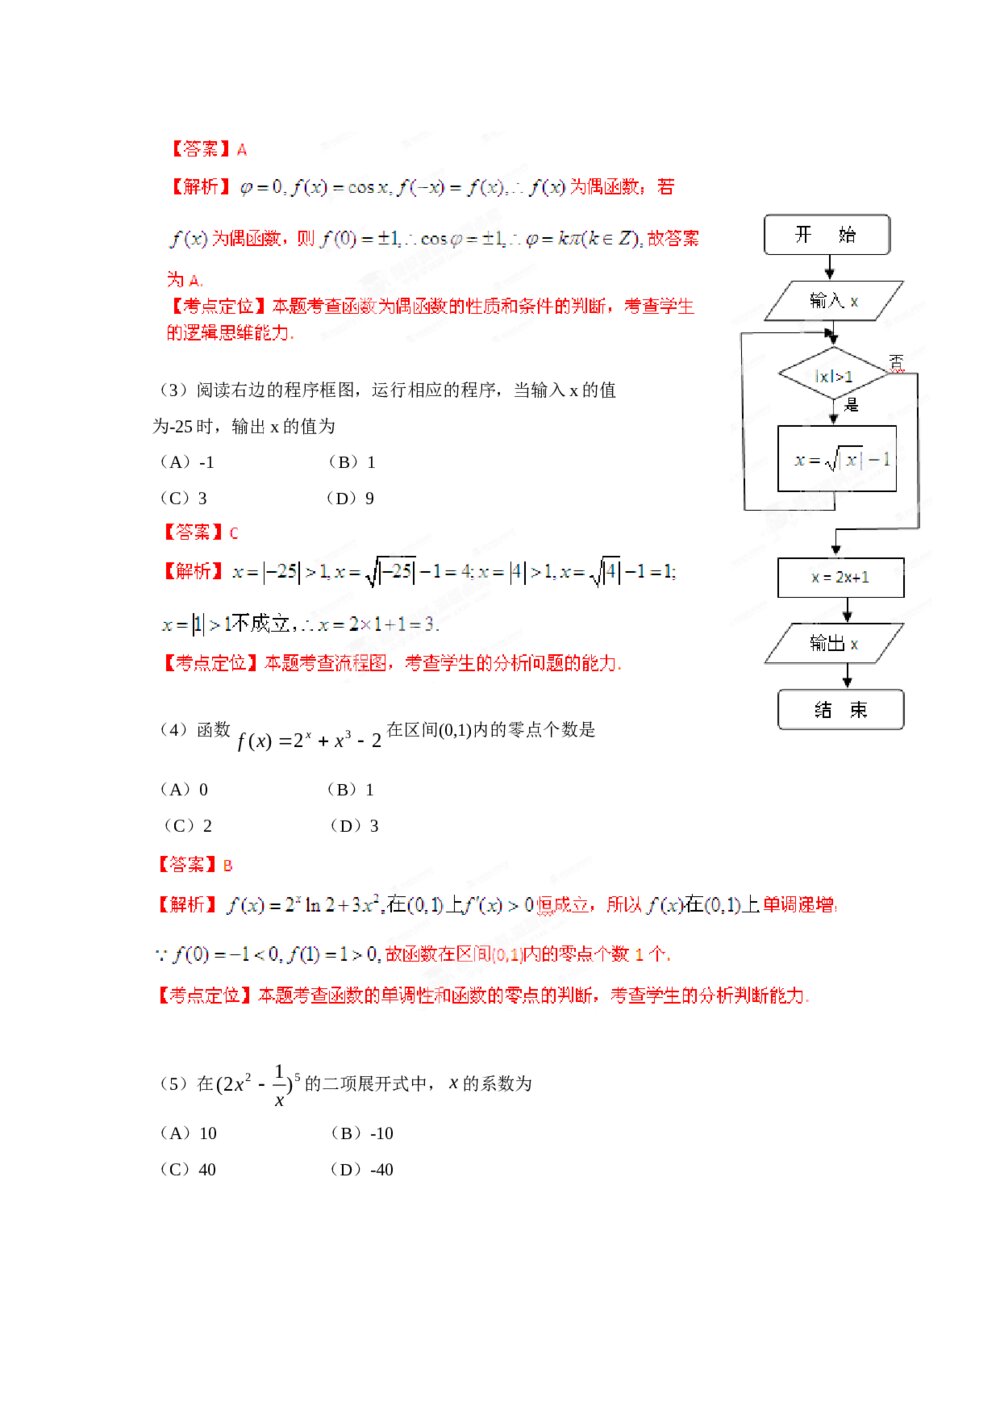 2012年天津高考(理科)数学试题试卷+答案解析6